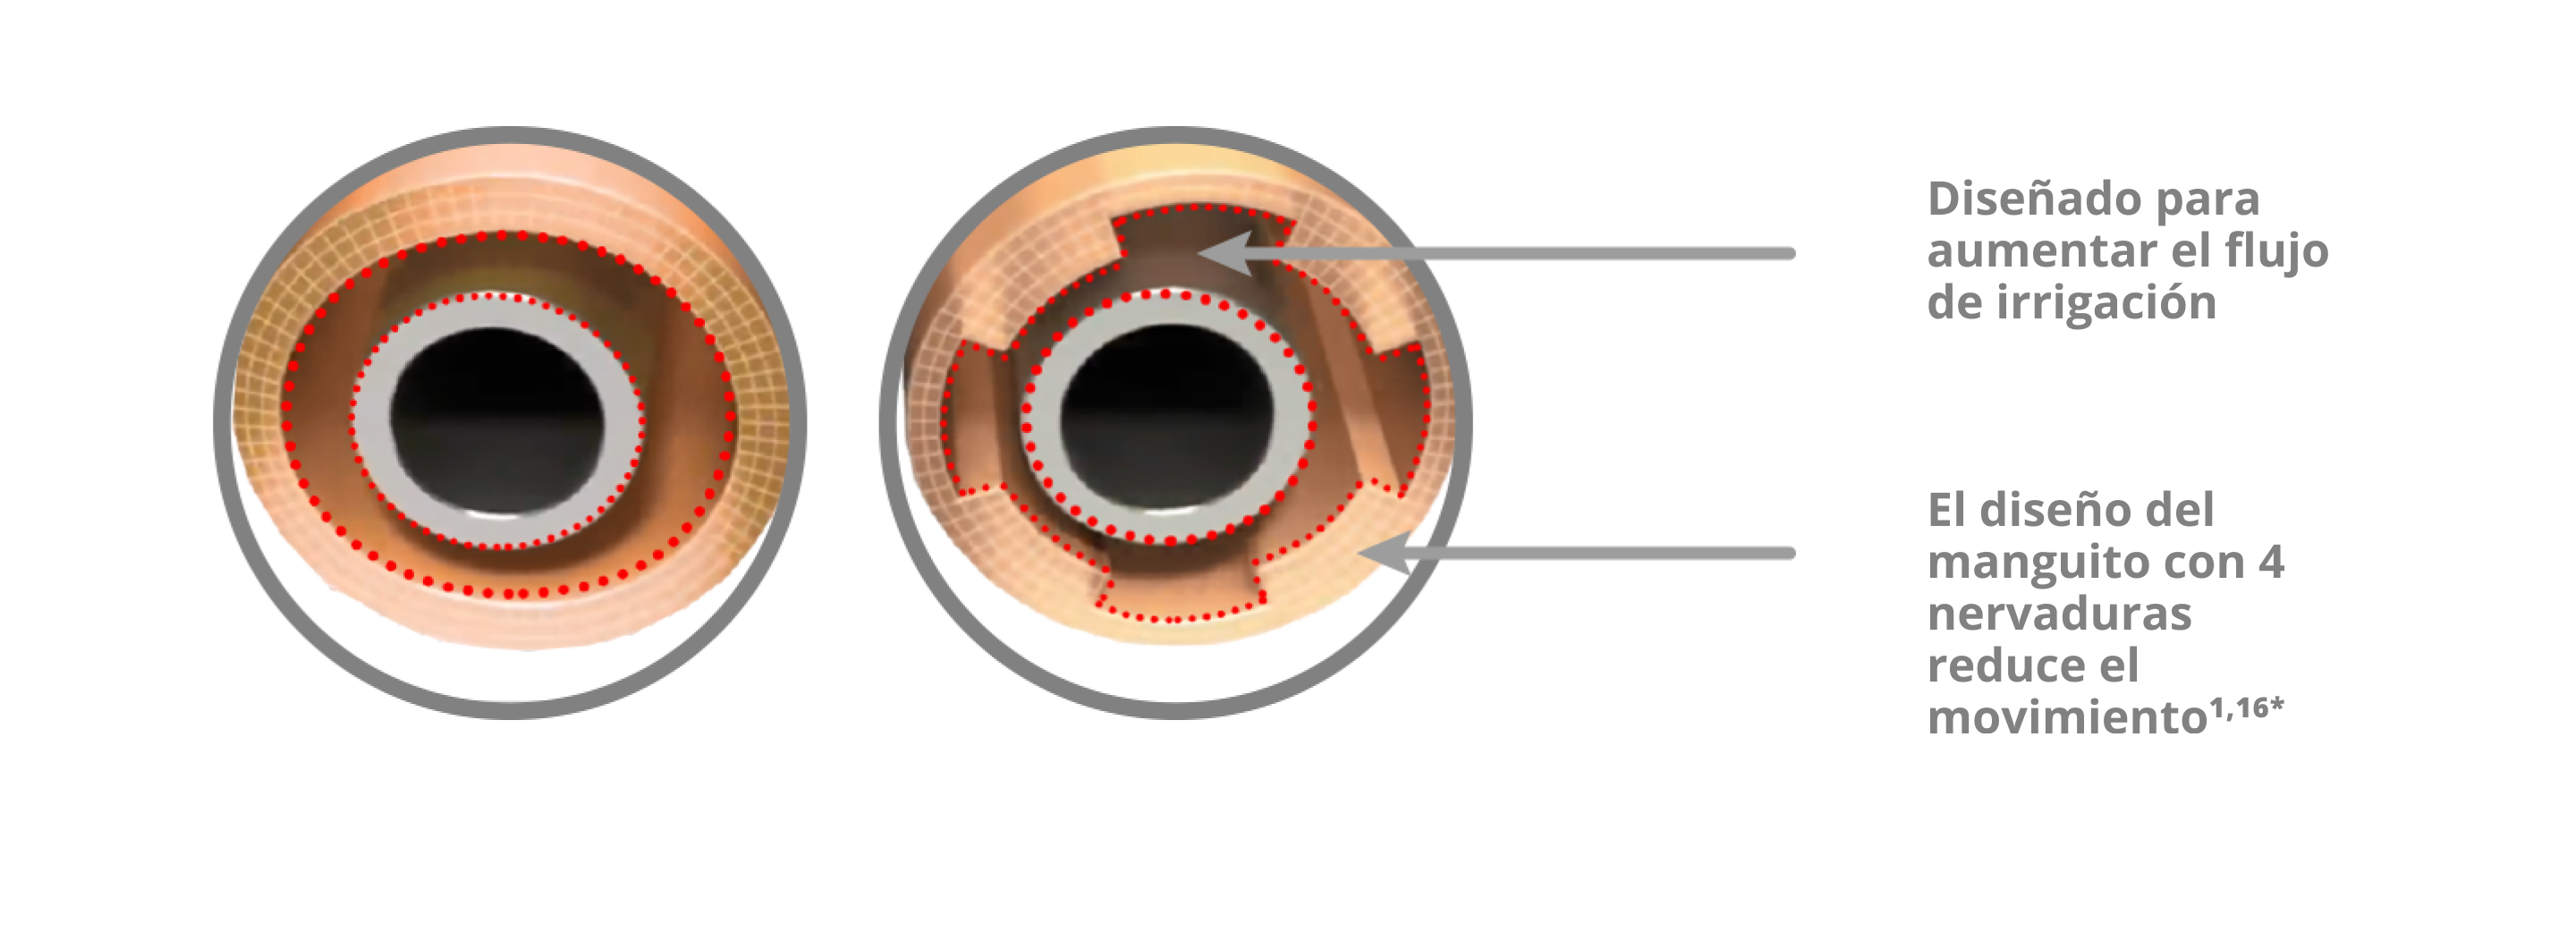 Imagen que muestra el manguito de irrigación INTREPID con diseño con 4 nervaduras que reduce el movimiento de la manguito y aumenta el flujo de irrigación en comparación con el sistema de visión INFINITI.